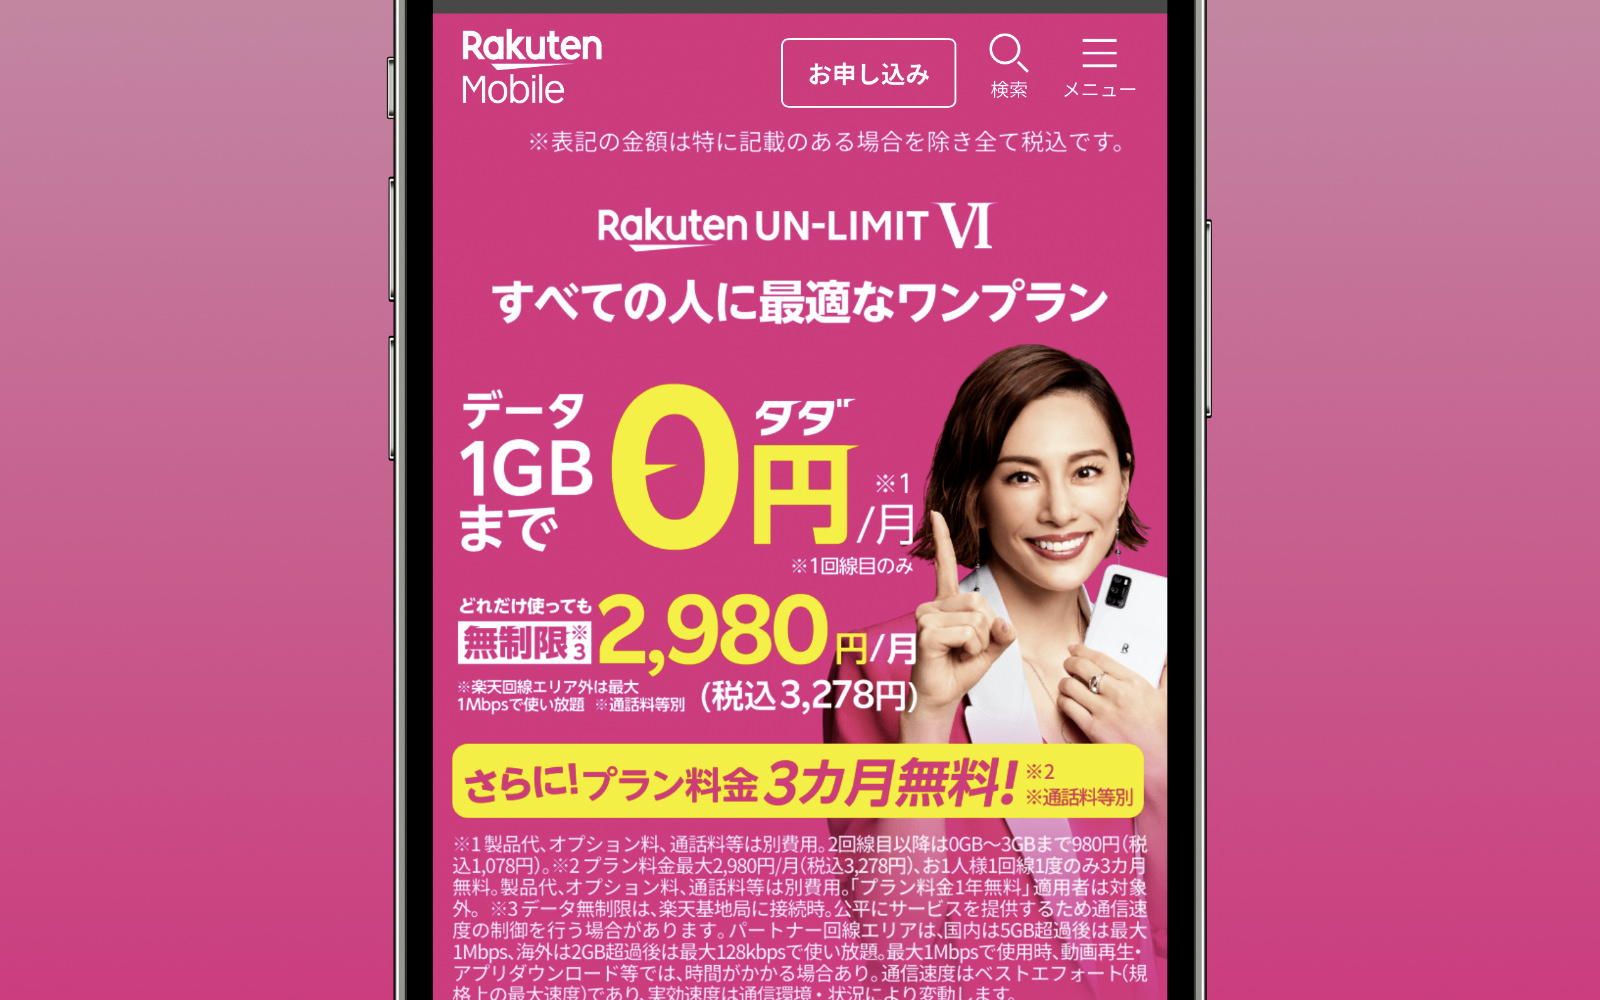 Rakuten-3month-free-trial.jpg